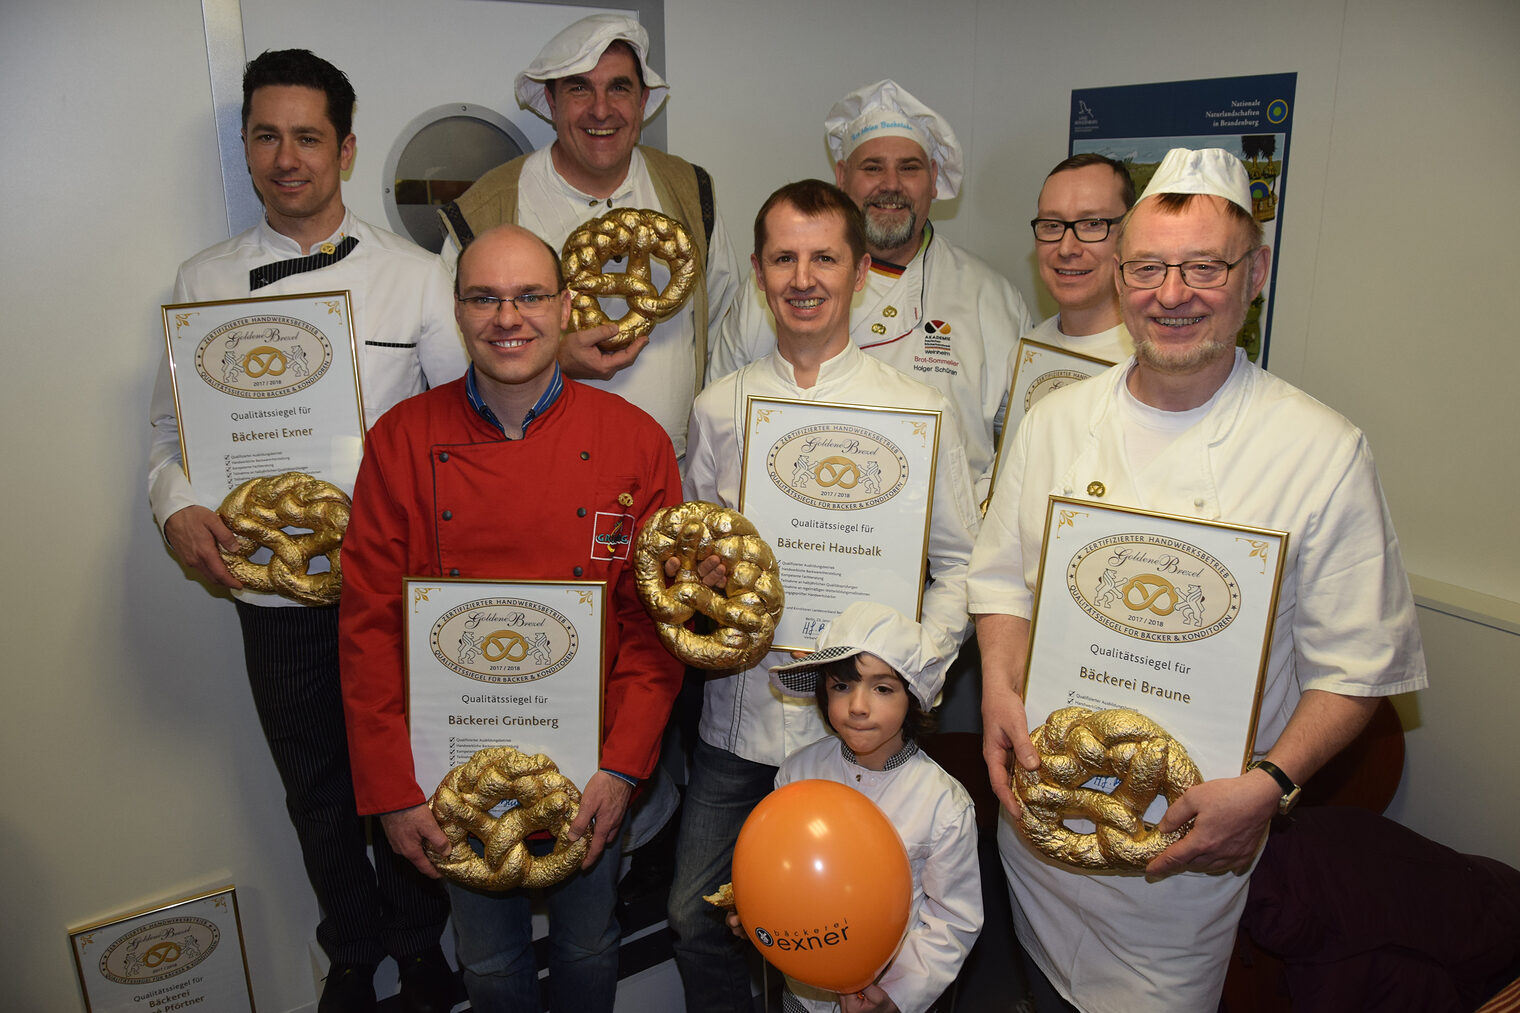 Große Bühne zur Grünen Woche - Qualitätssiegel für herausragende Bäckereibetriebe